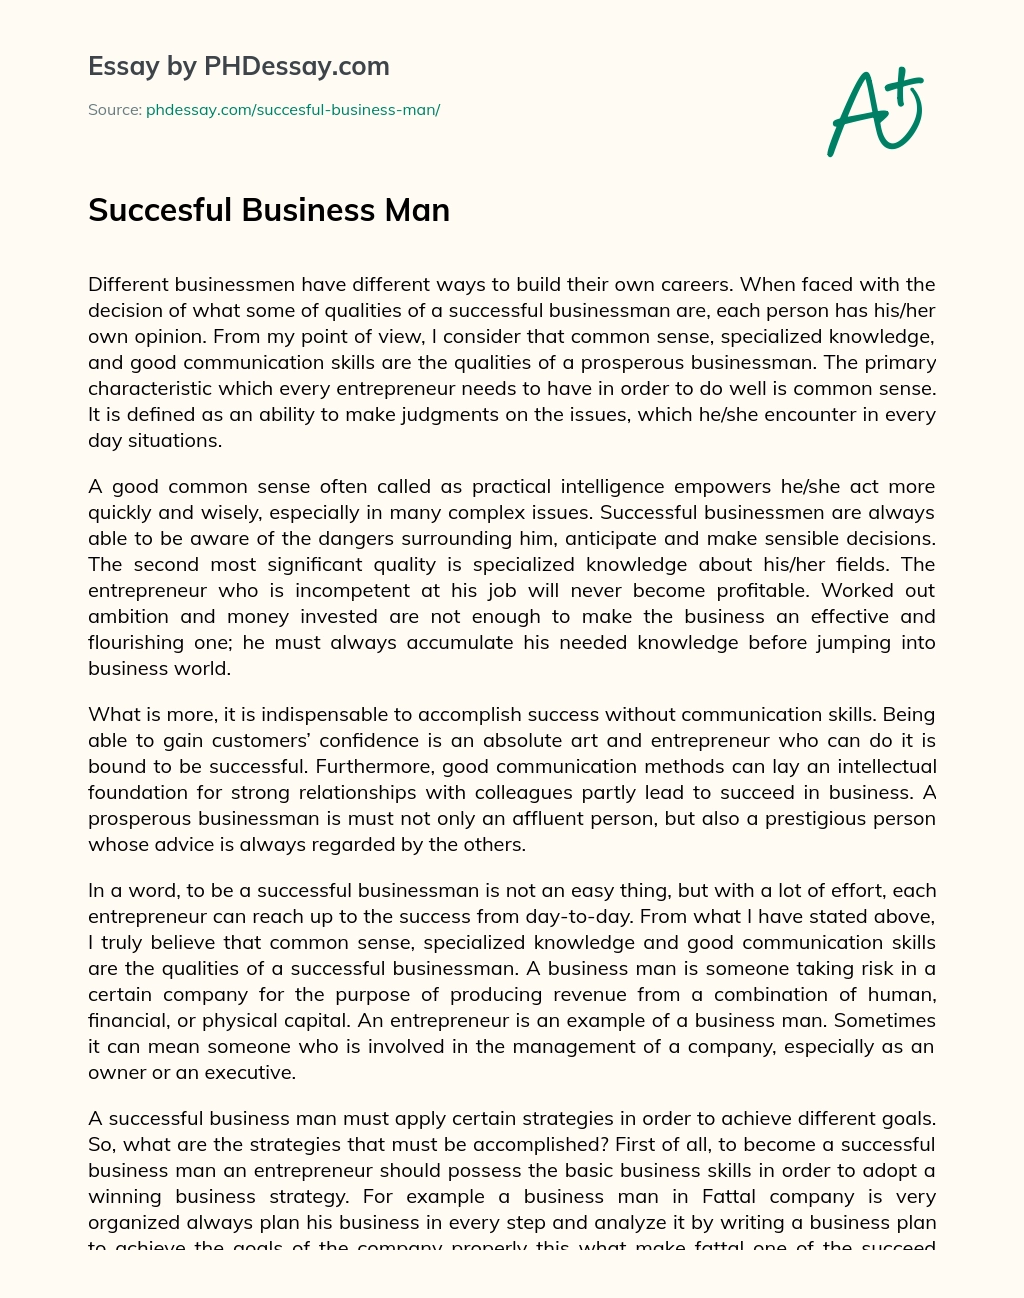 Succesful Business Man essay